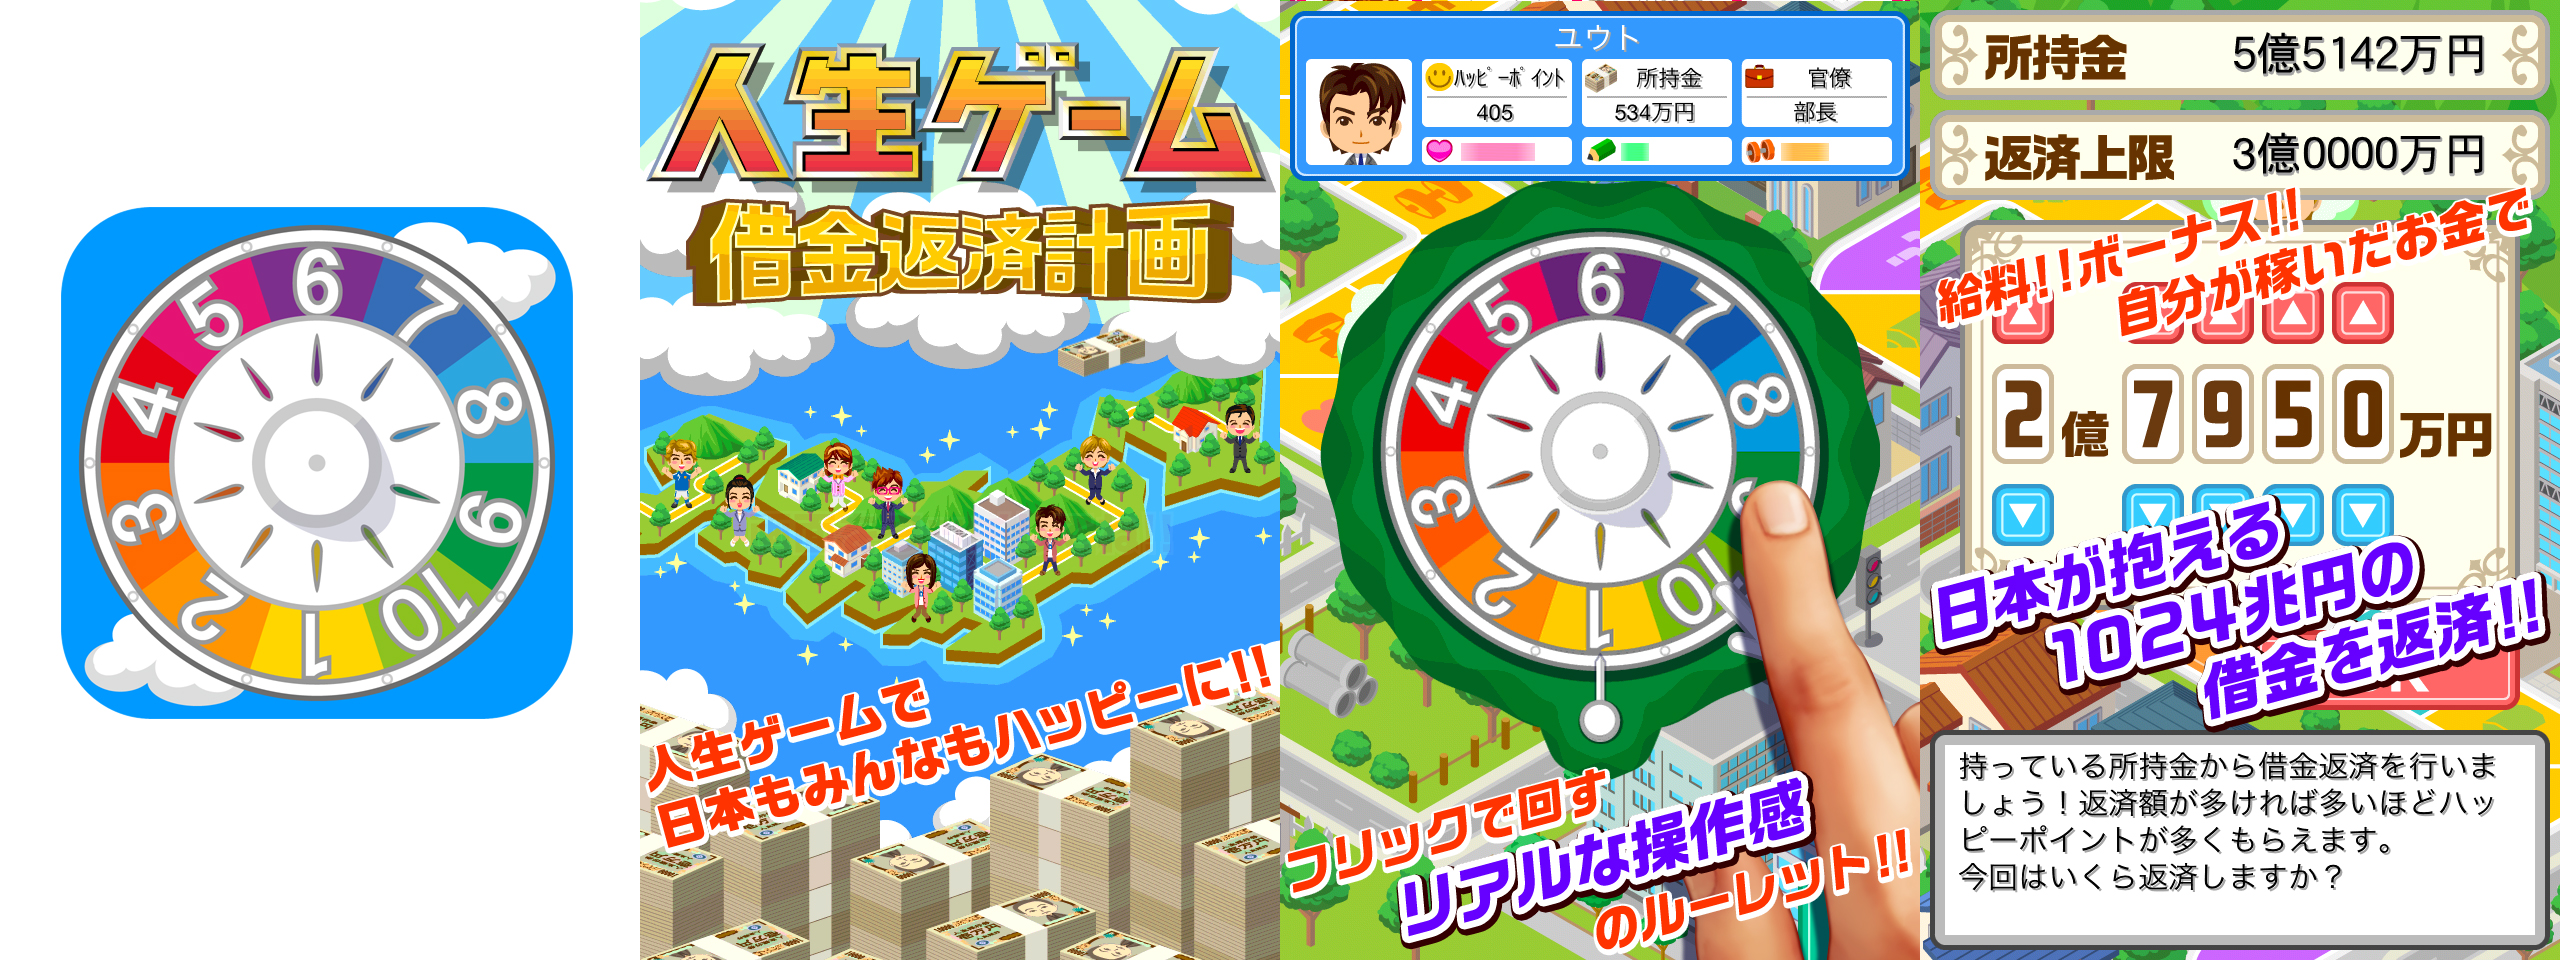 人生ゲーム スマホアプリ第2弾 Appstore Google Playで配信開始 Zdnet Japan